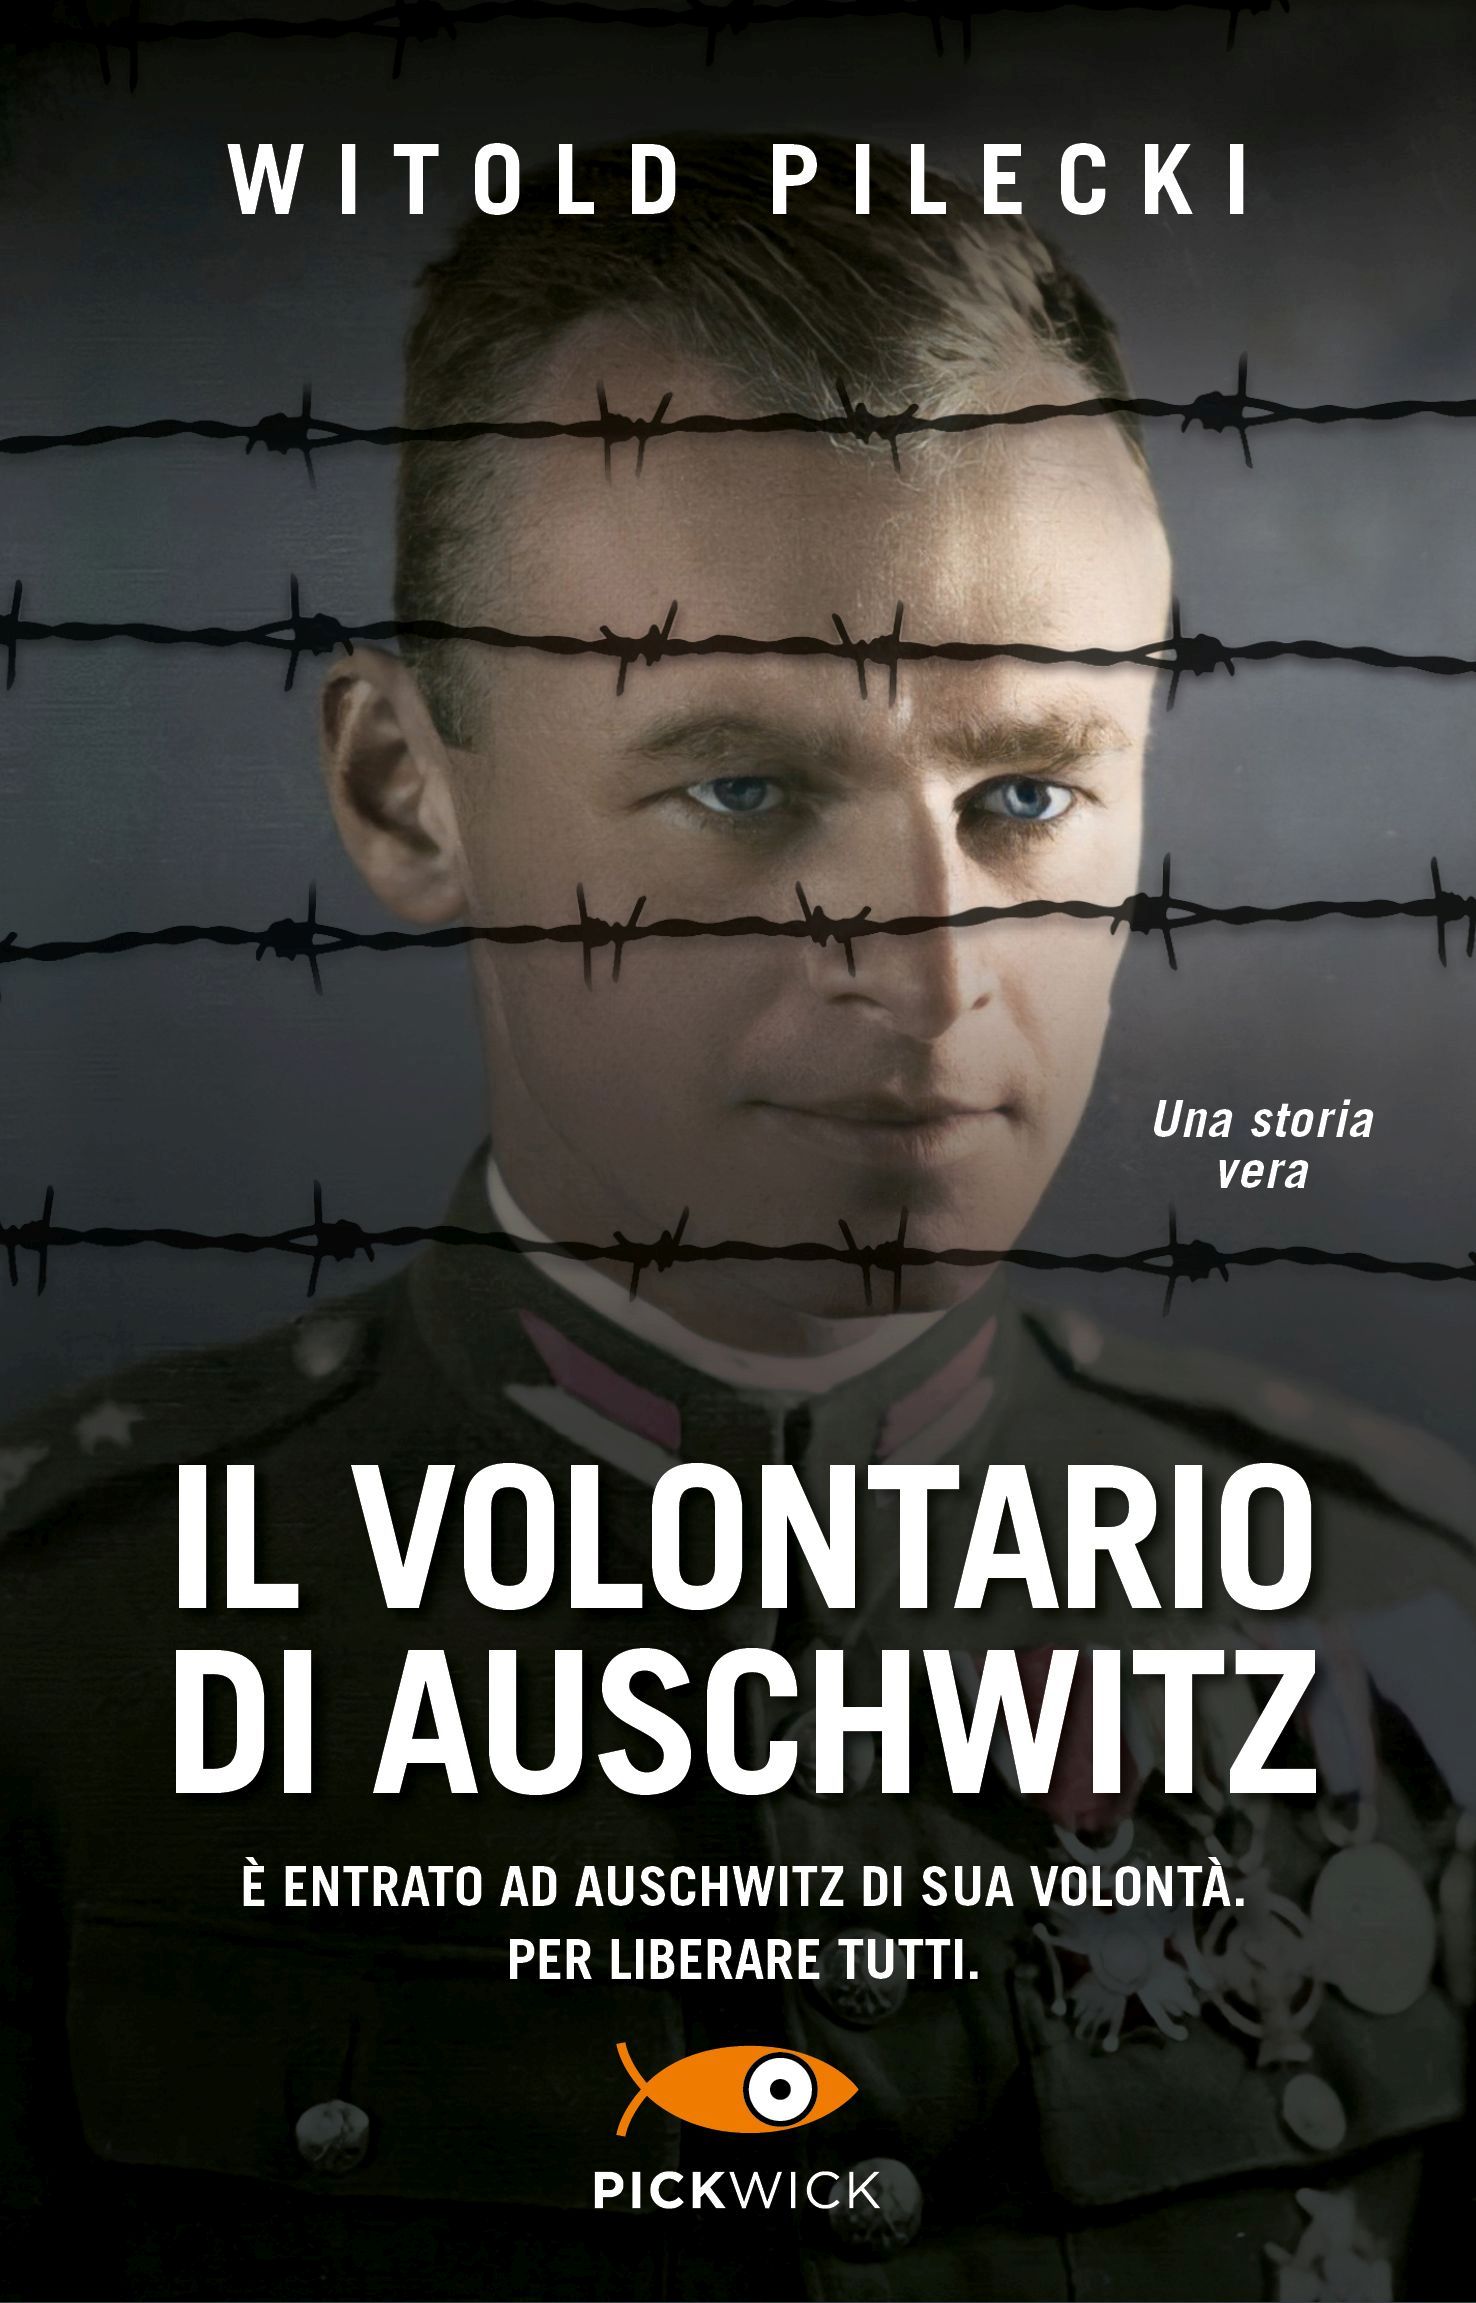 AuschwitzVolunteer ItalyNewCover